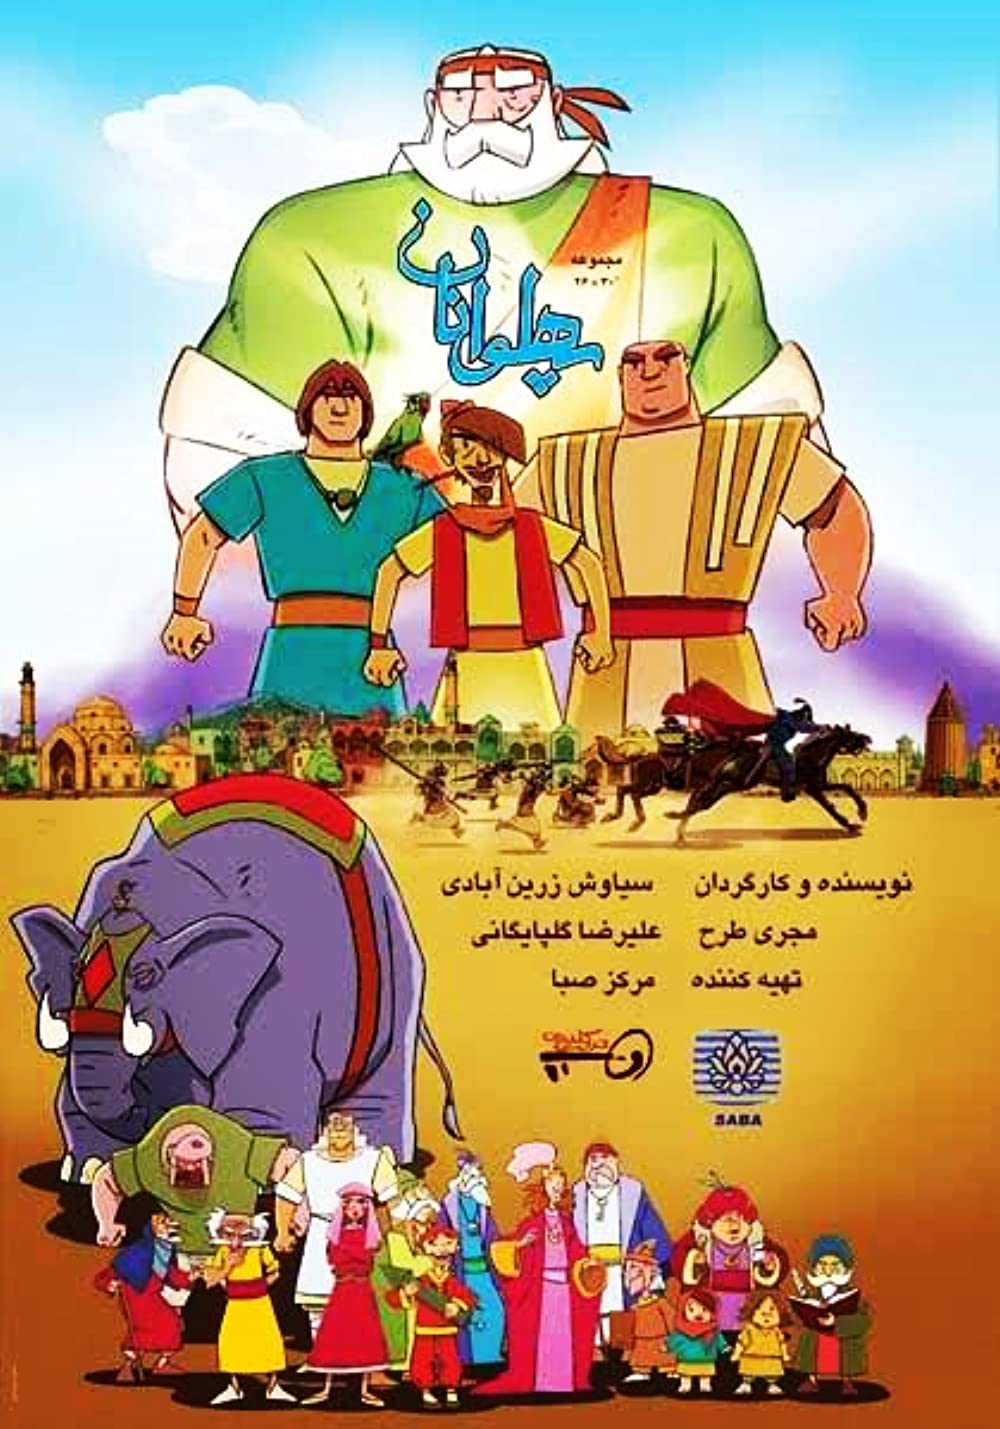 حذف انیمیشن پهلوانان با هجوم کاربران ایرانی